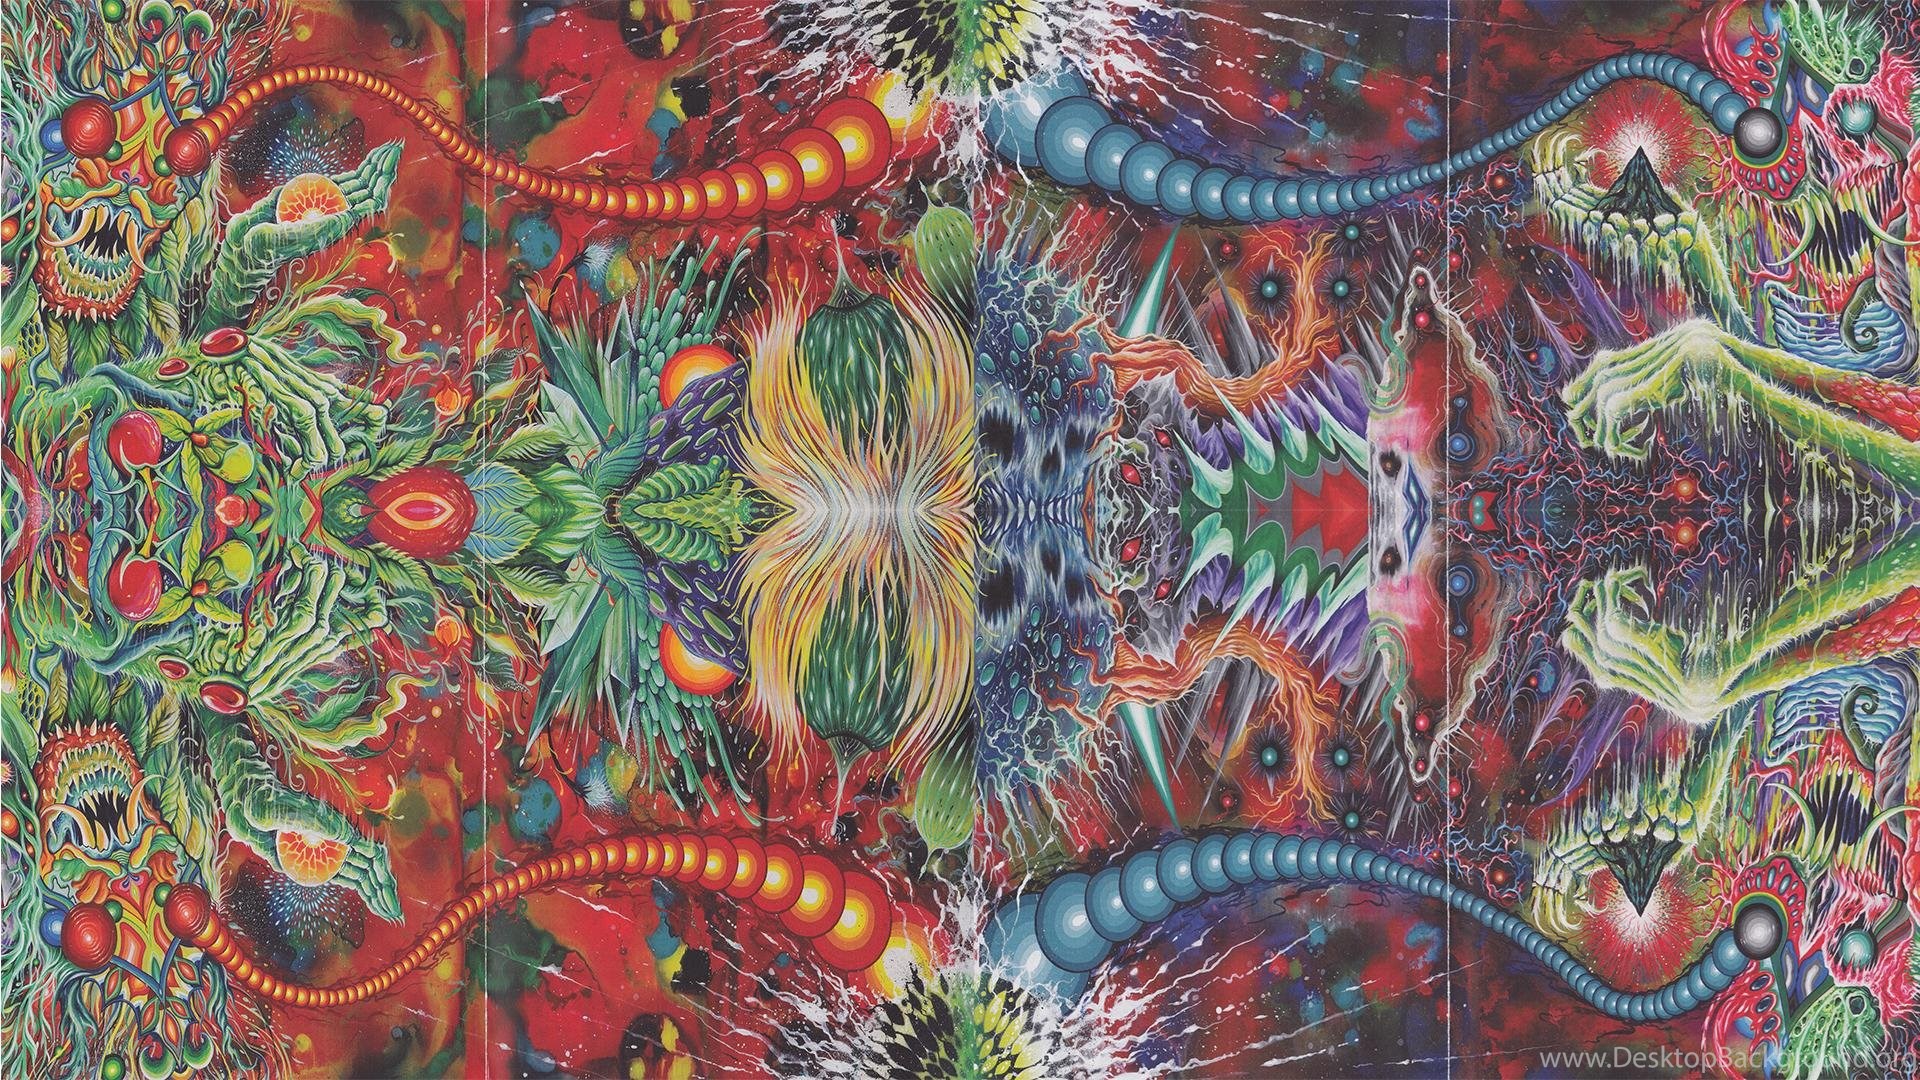 mastodon wallpaper,organism,art,pattern,psychedelic art,visual arts